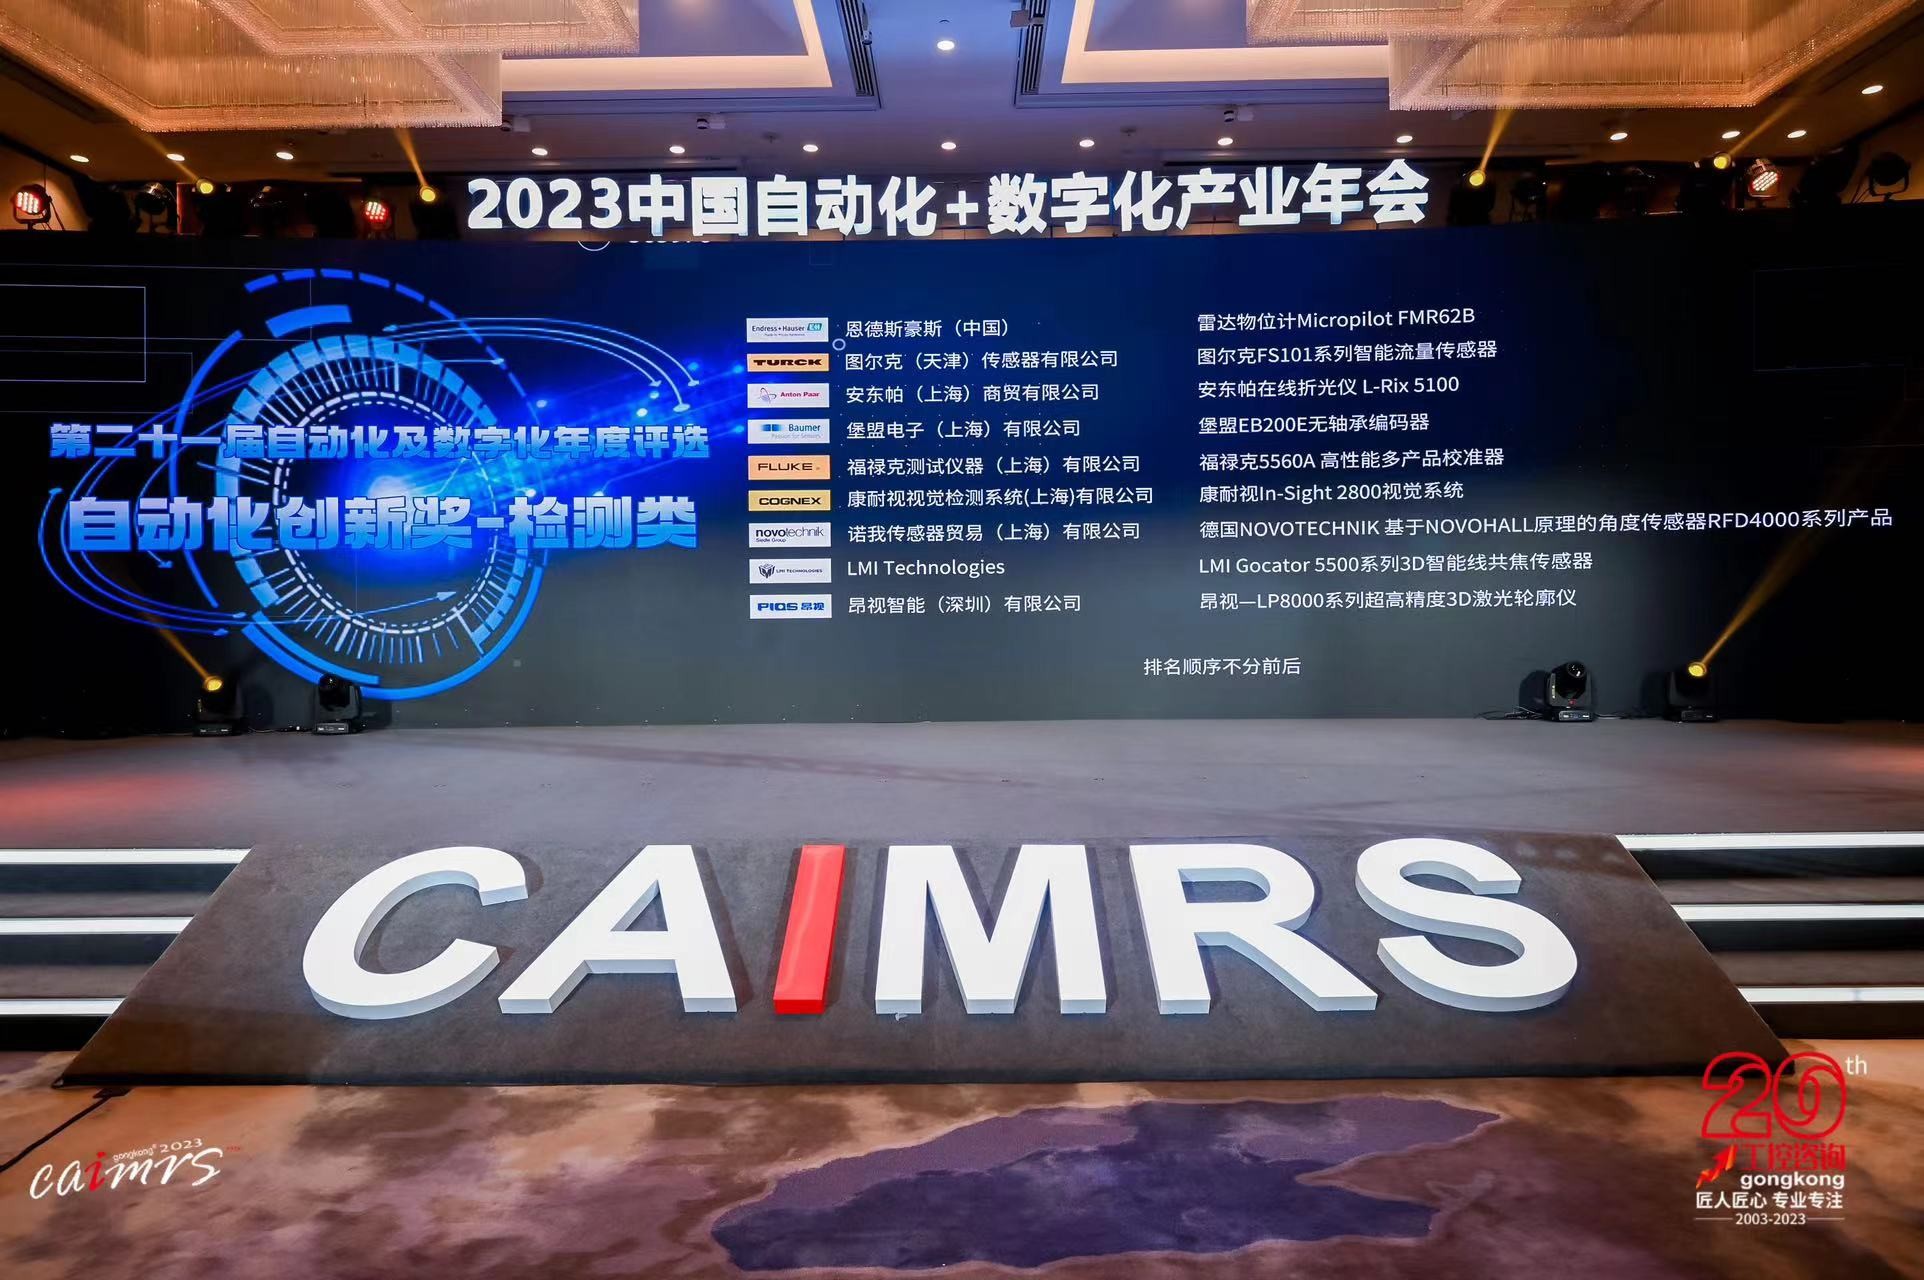 载誉而归！昂视荣膺CAIMRS 2023「自动化创新奖」